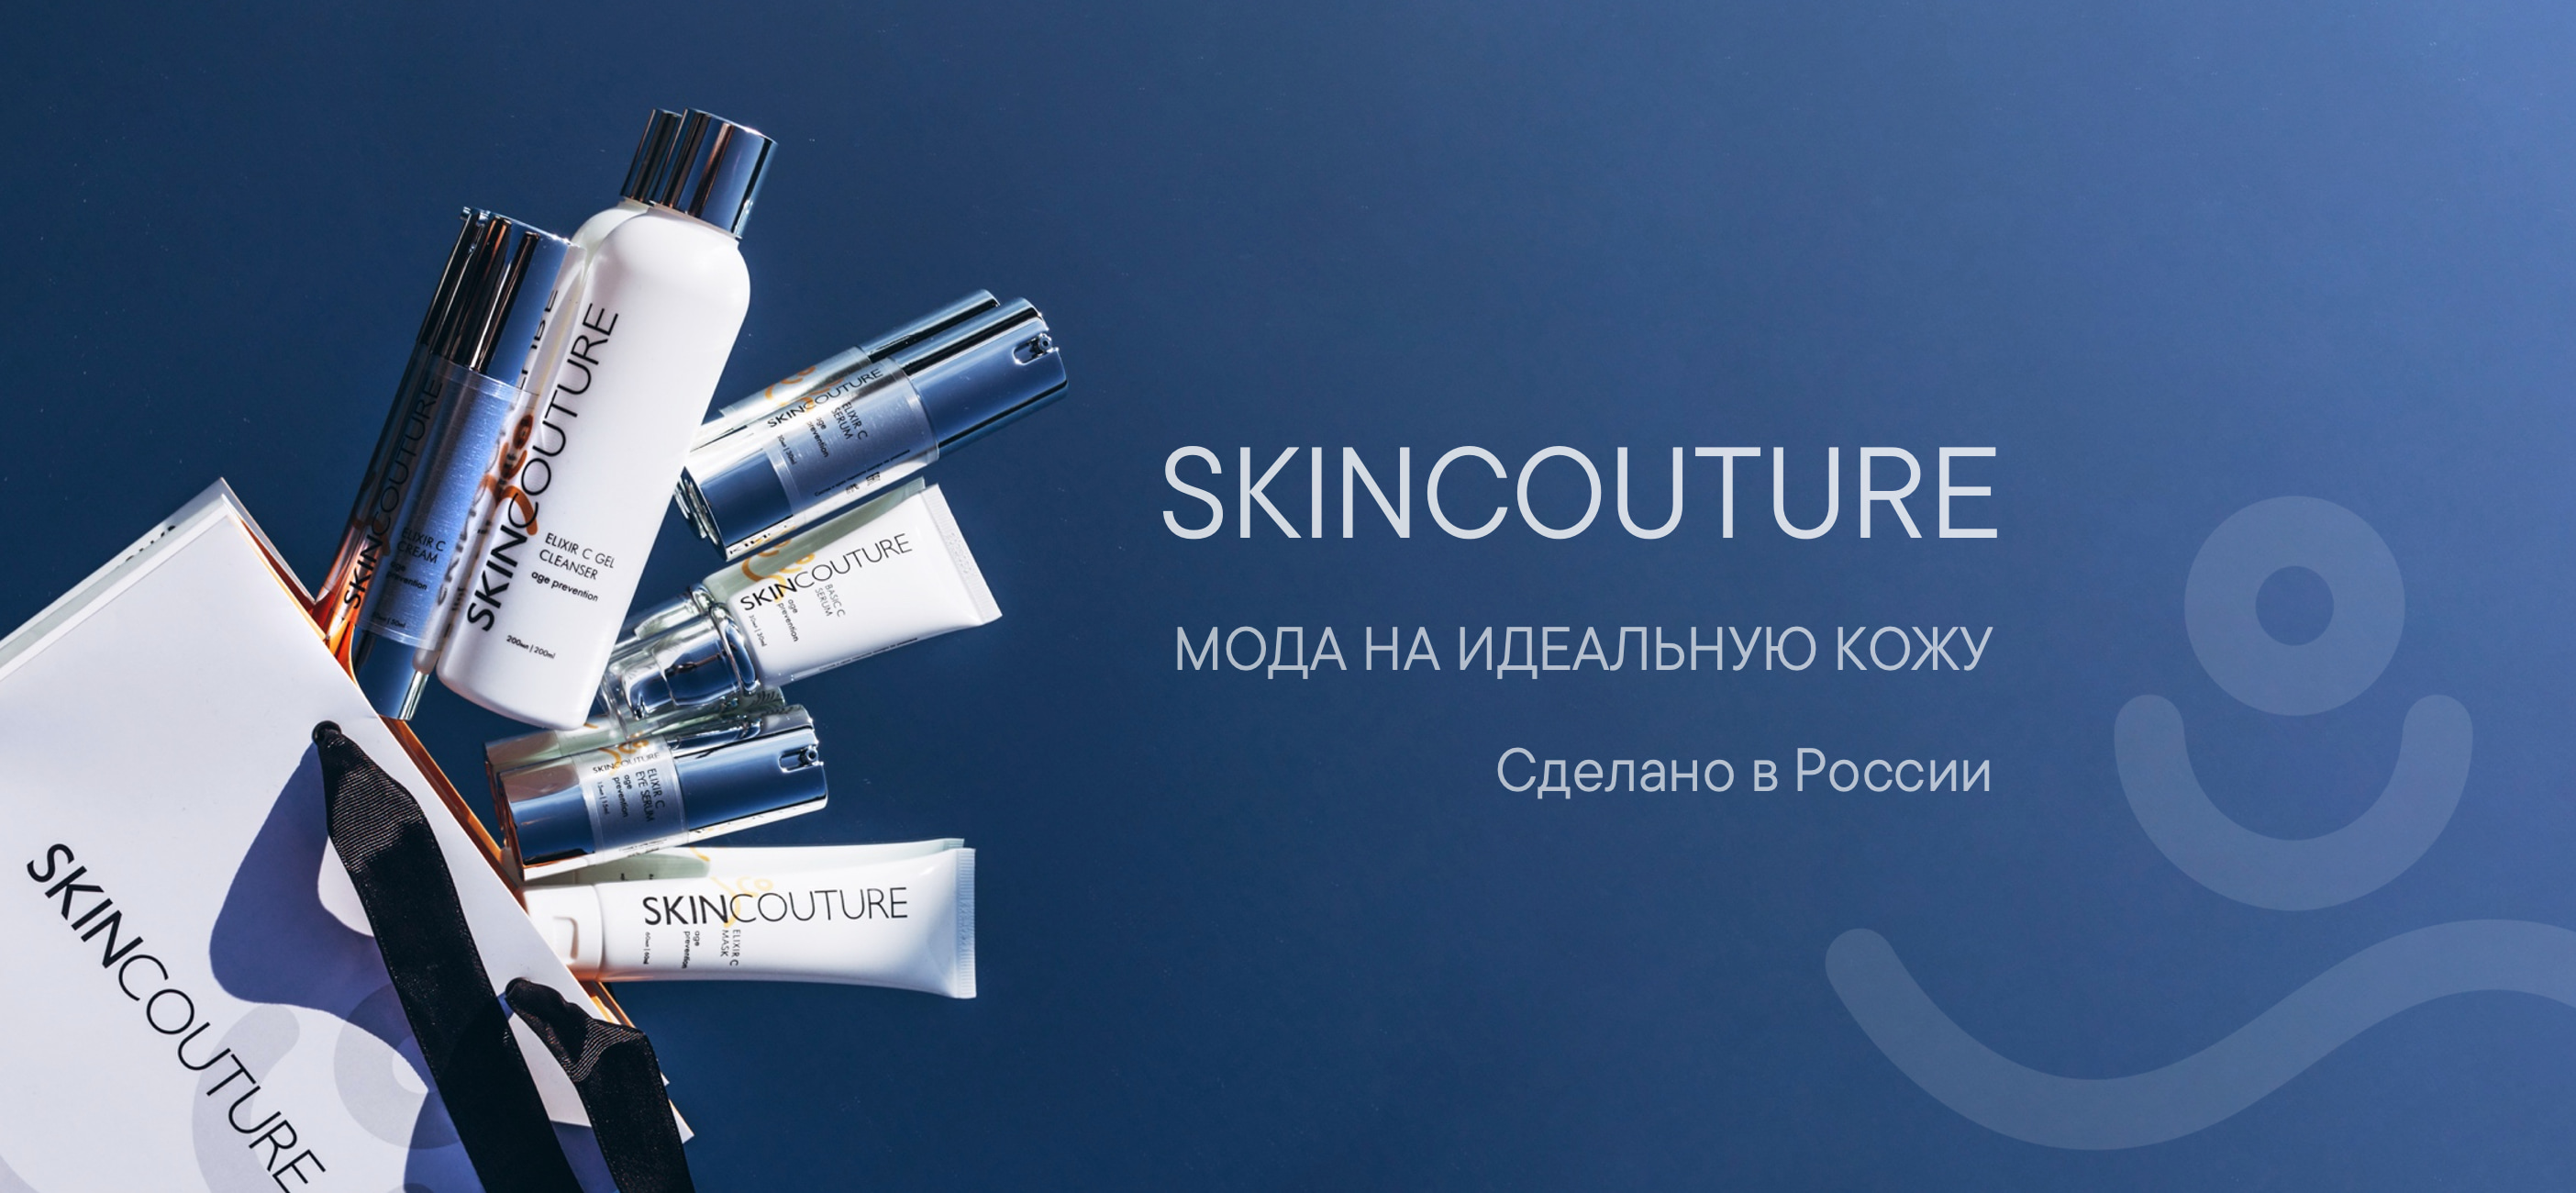 SKINCOUTURE - профессиональная косметика премиального сегмента для ухода за кожей лица, произведенный в России!